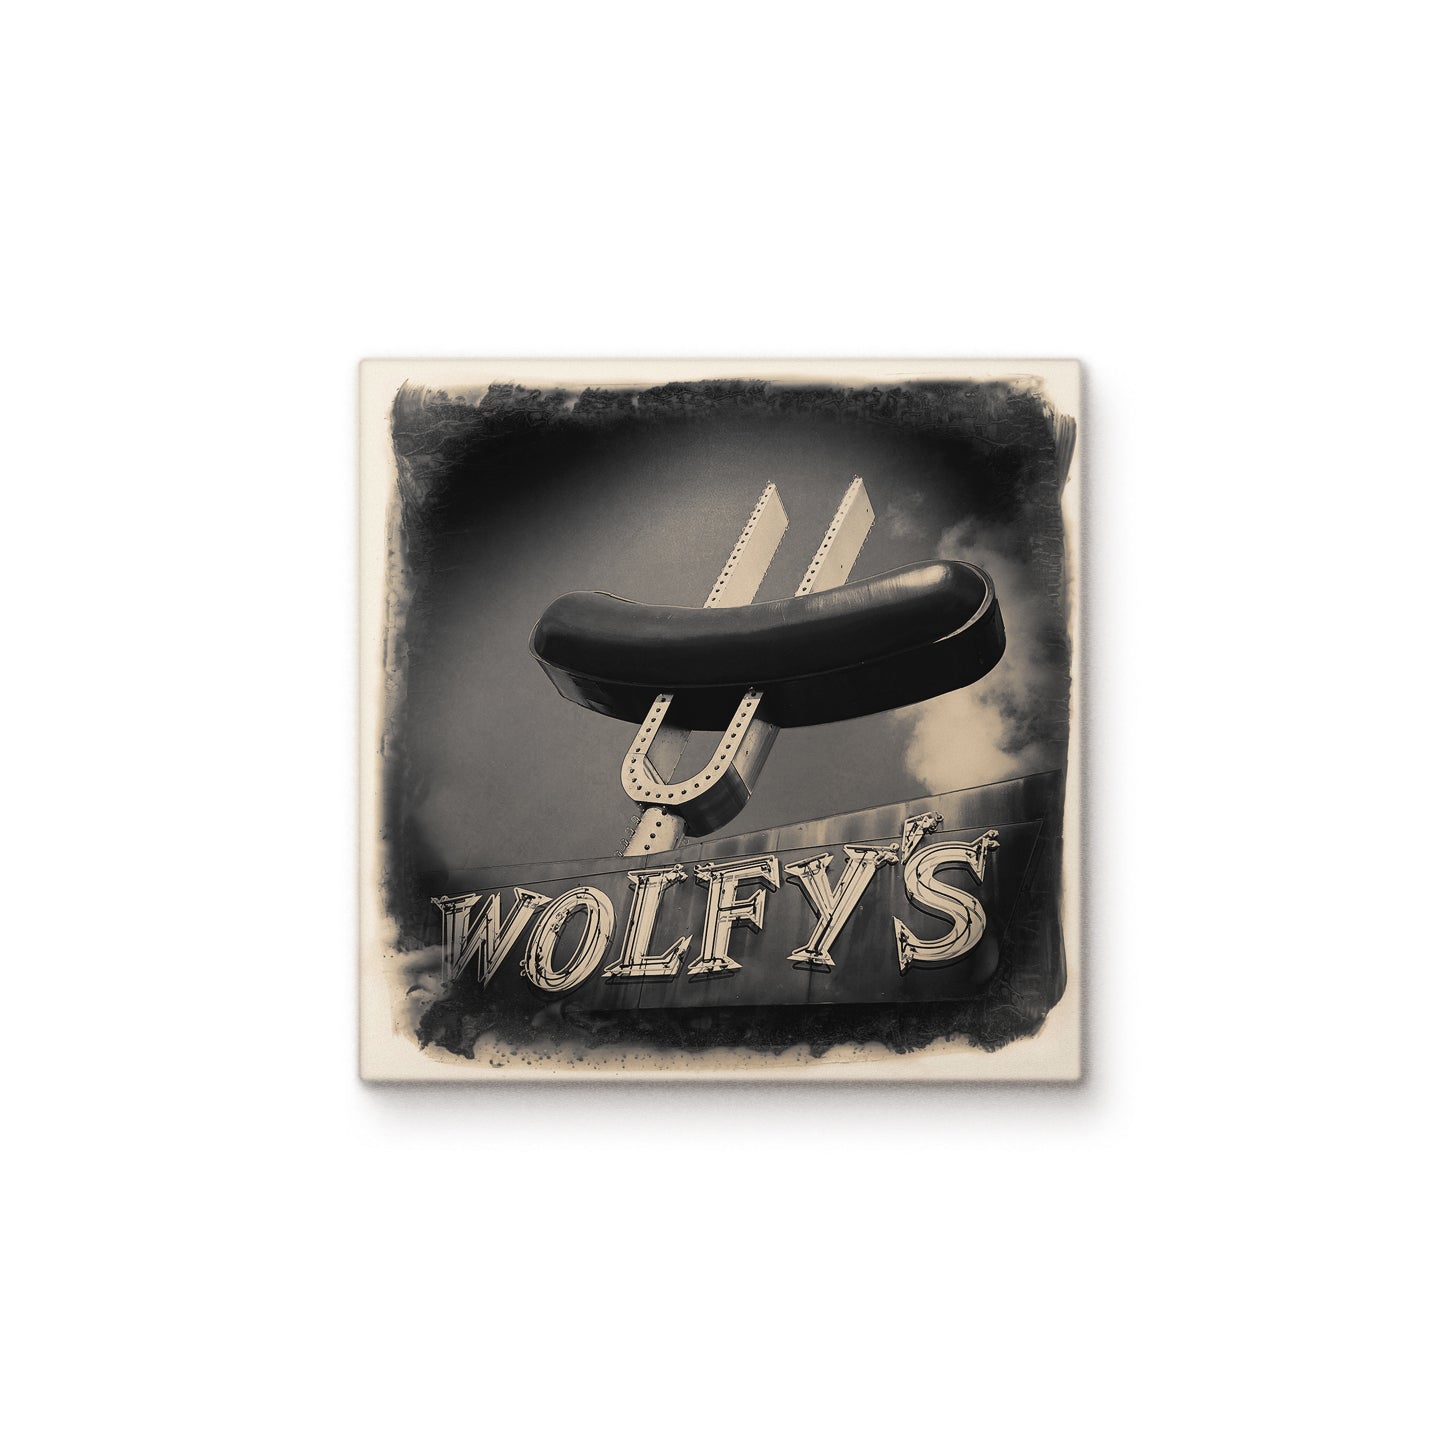 Wolfy's